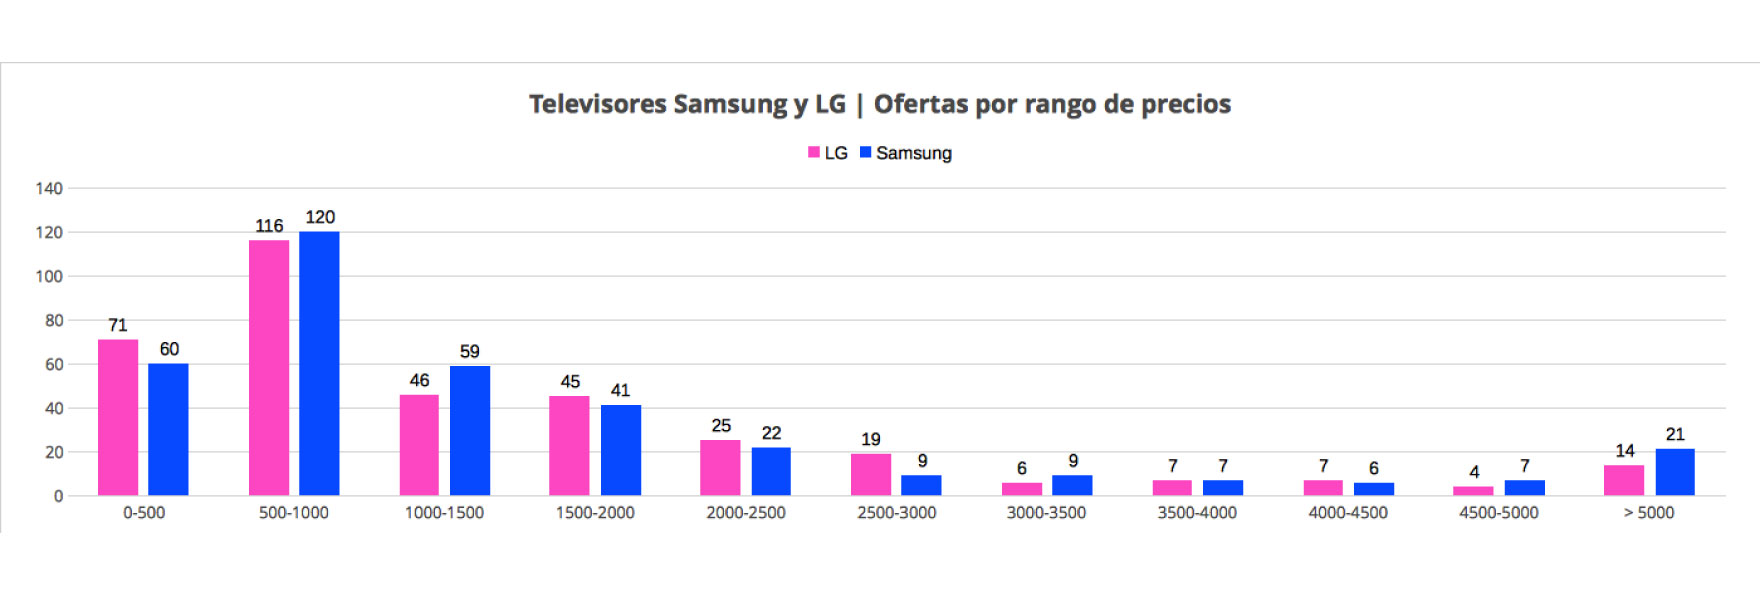 Televisores Samsung y LG en el mercado online de España